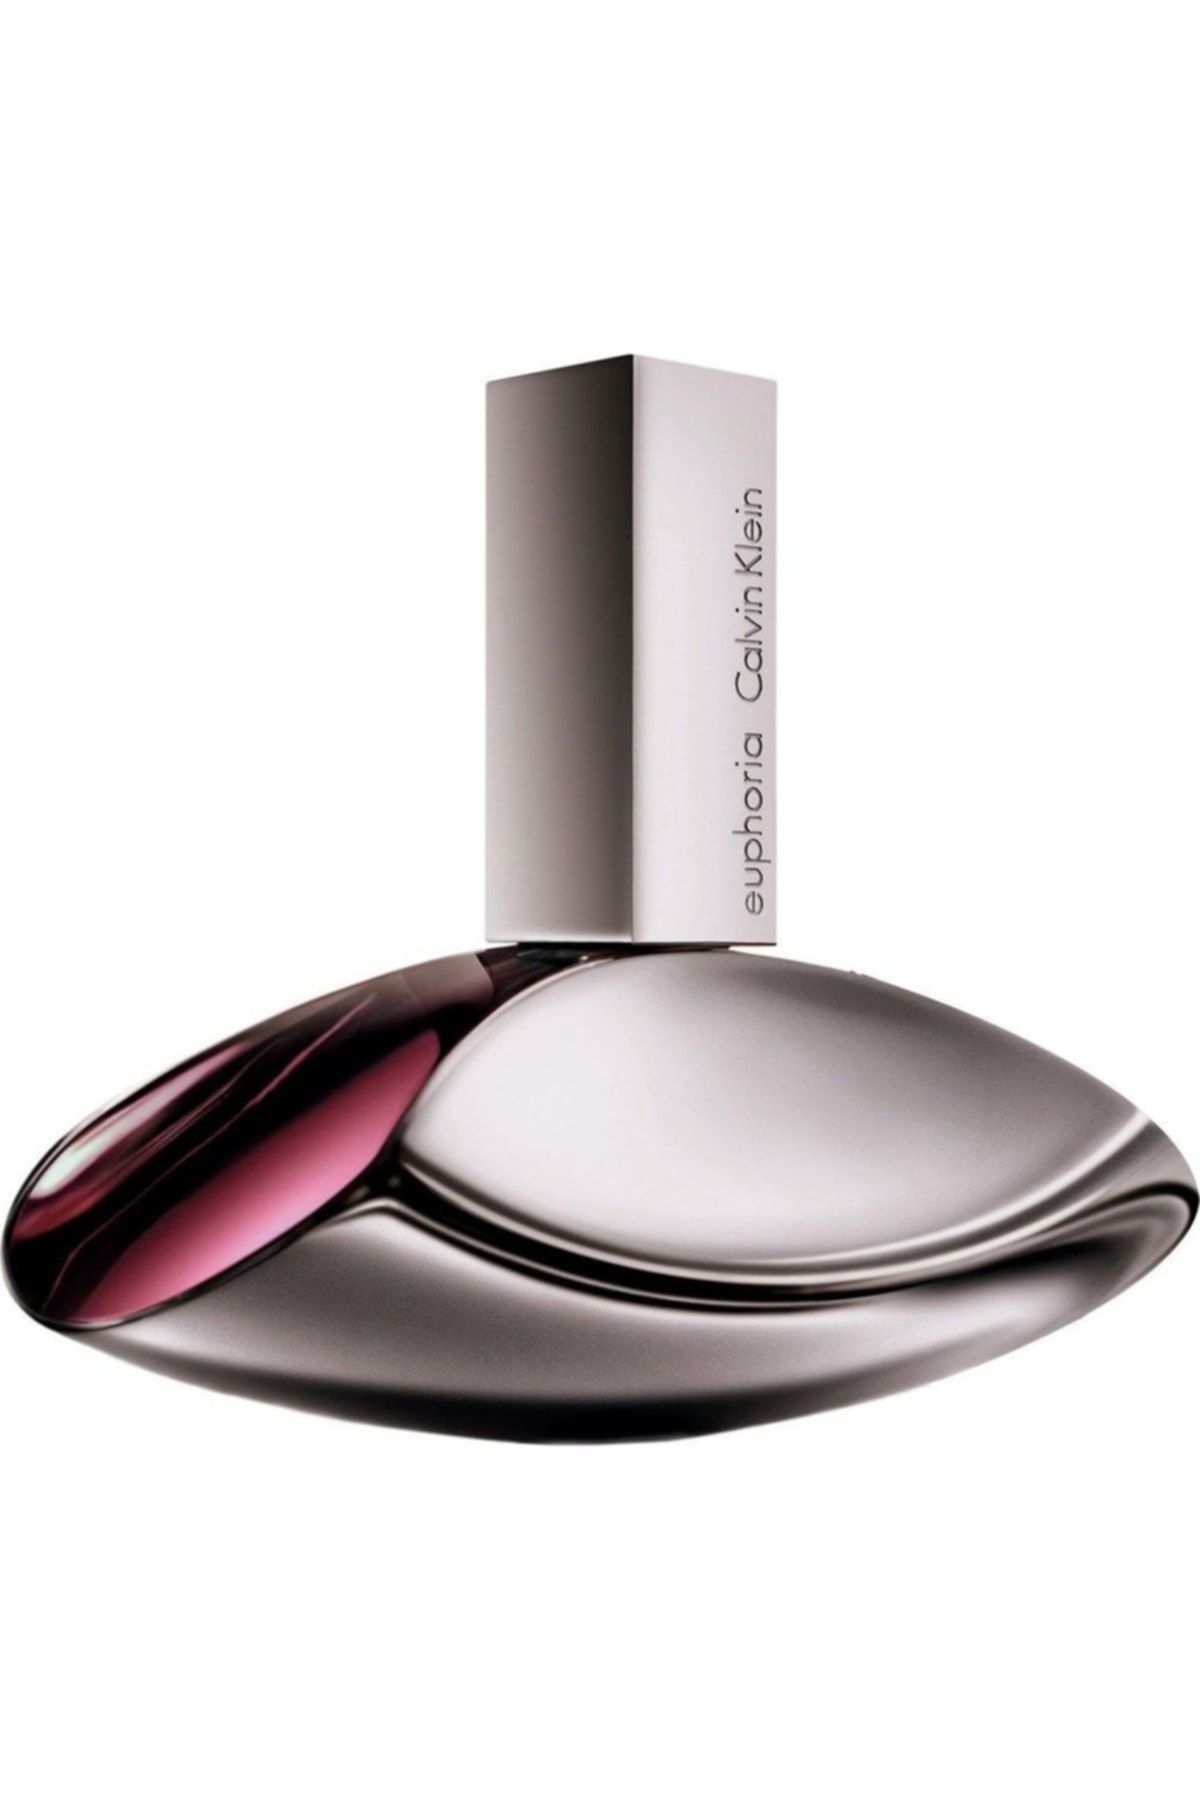 Calvin Klein Ck Euphoria Edp Spray 100 Ml Kadın Parfüm